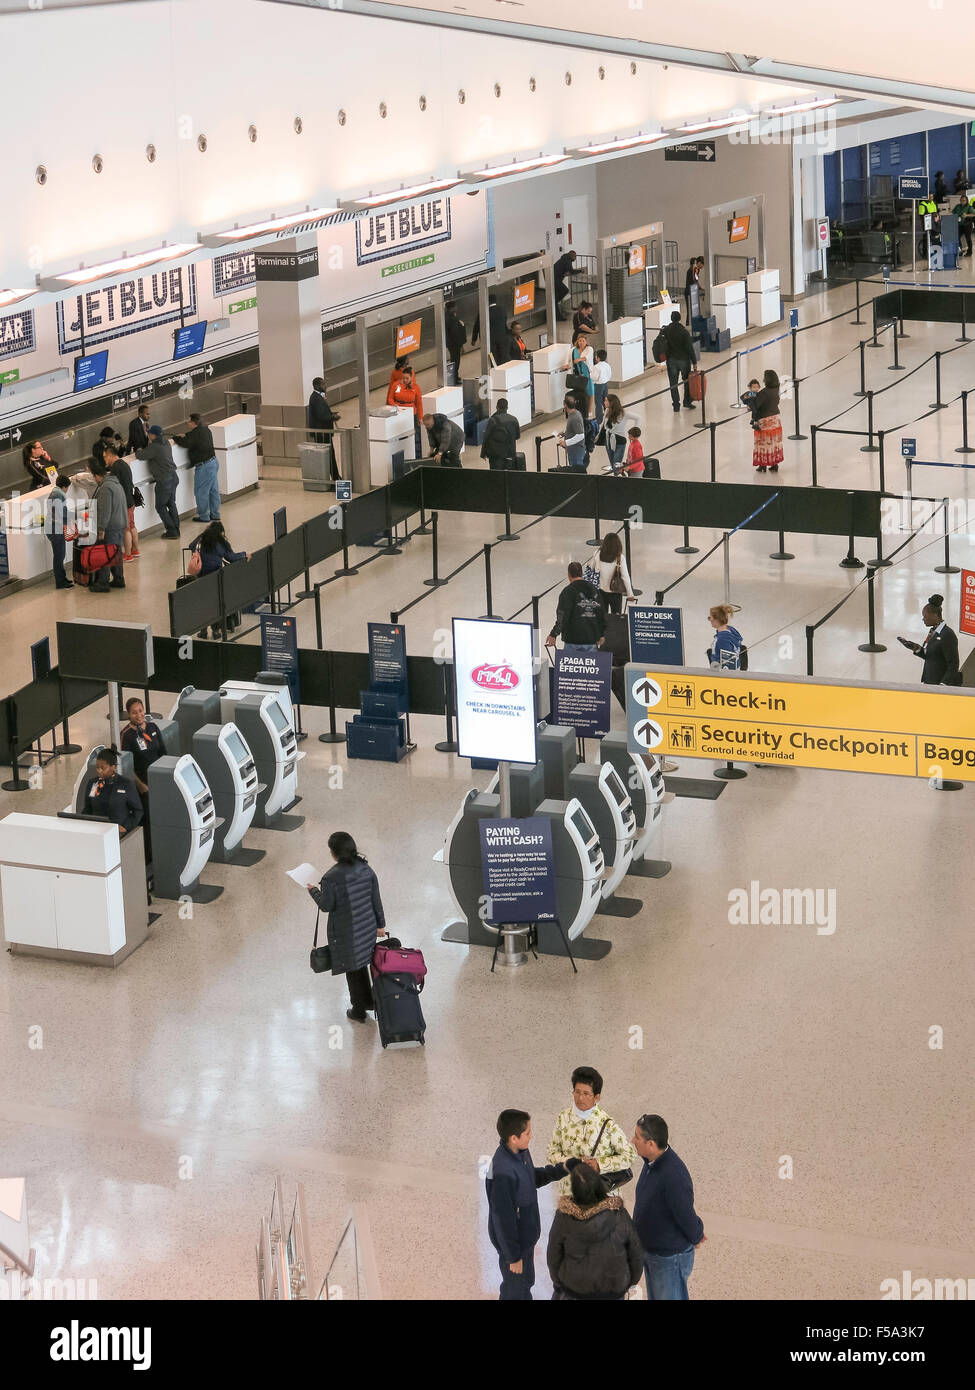 Biglietterie e Area Check In Jet Blue, terminale 5, John F. Kennedy International Airport di New York Foto Stock